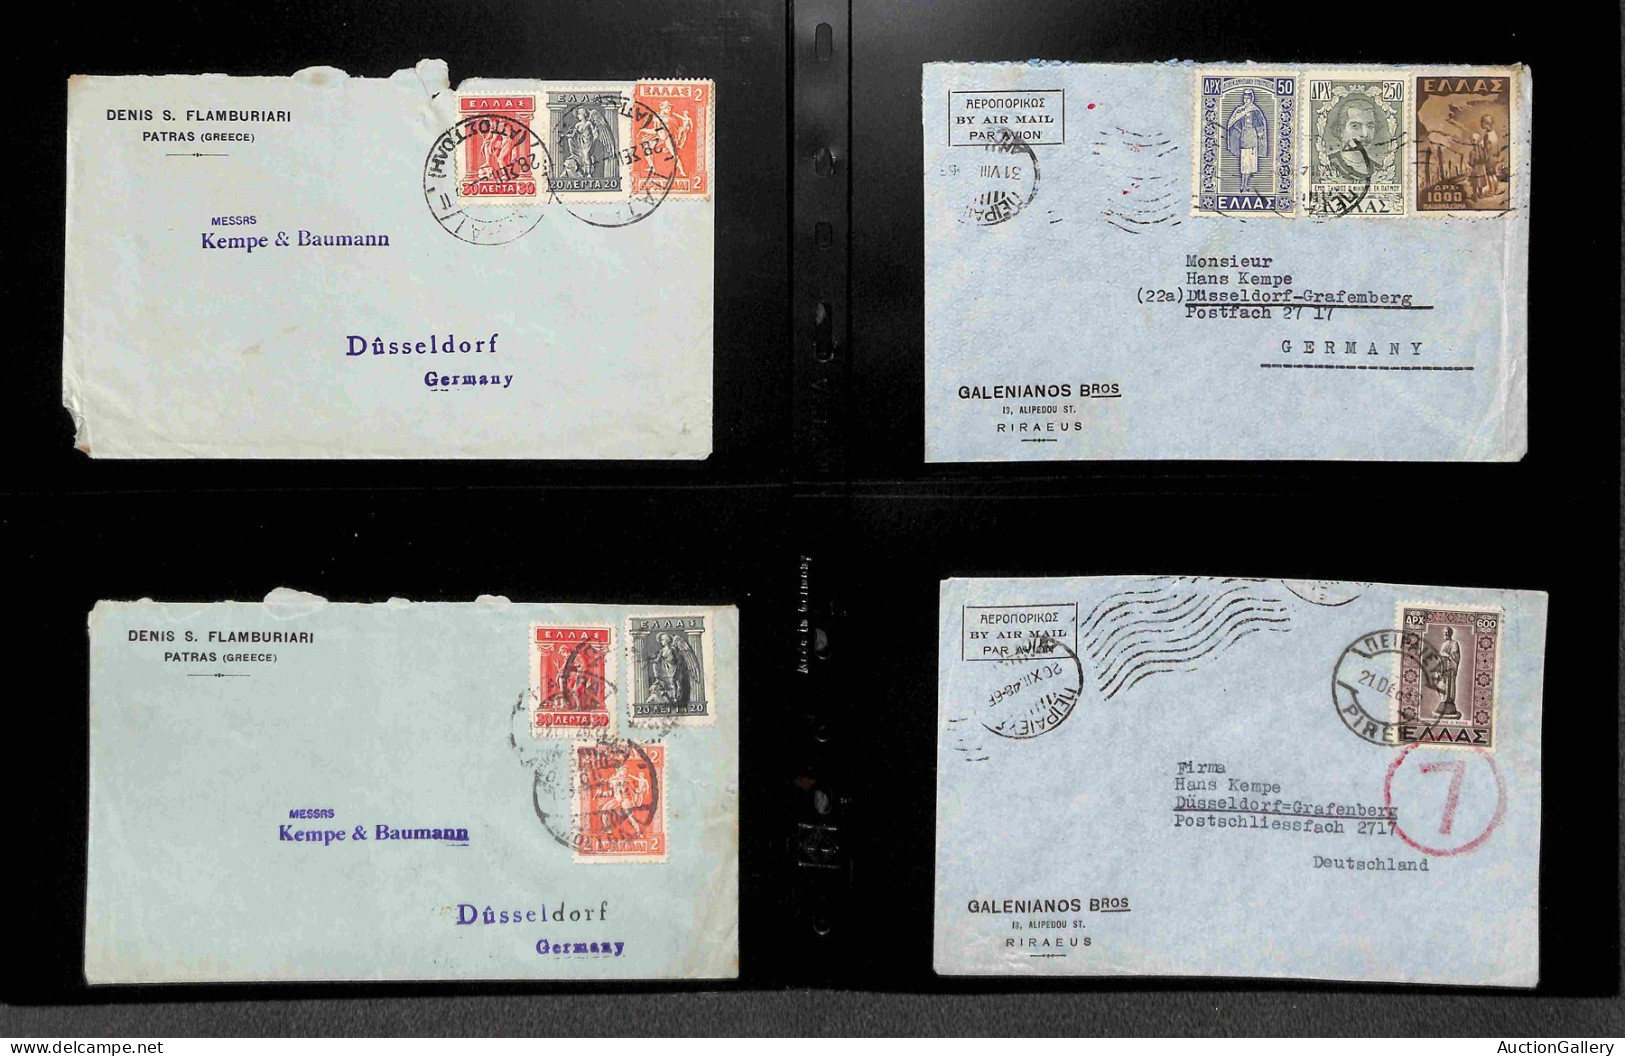 Lotti&Collezioni - Europa&Oltremare - GRECIA - 1925/1949 - Lotto di 52 buste con alcuni aerogrammi del periodo montati s